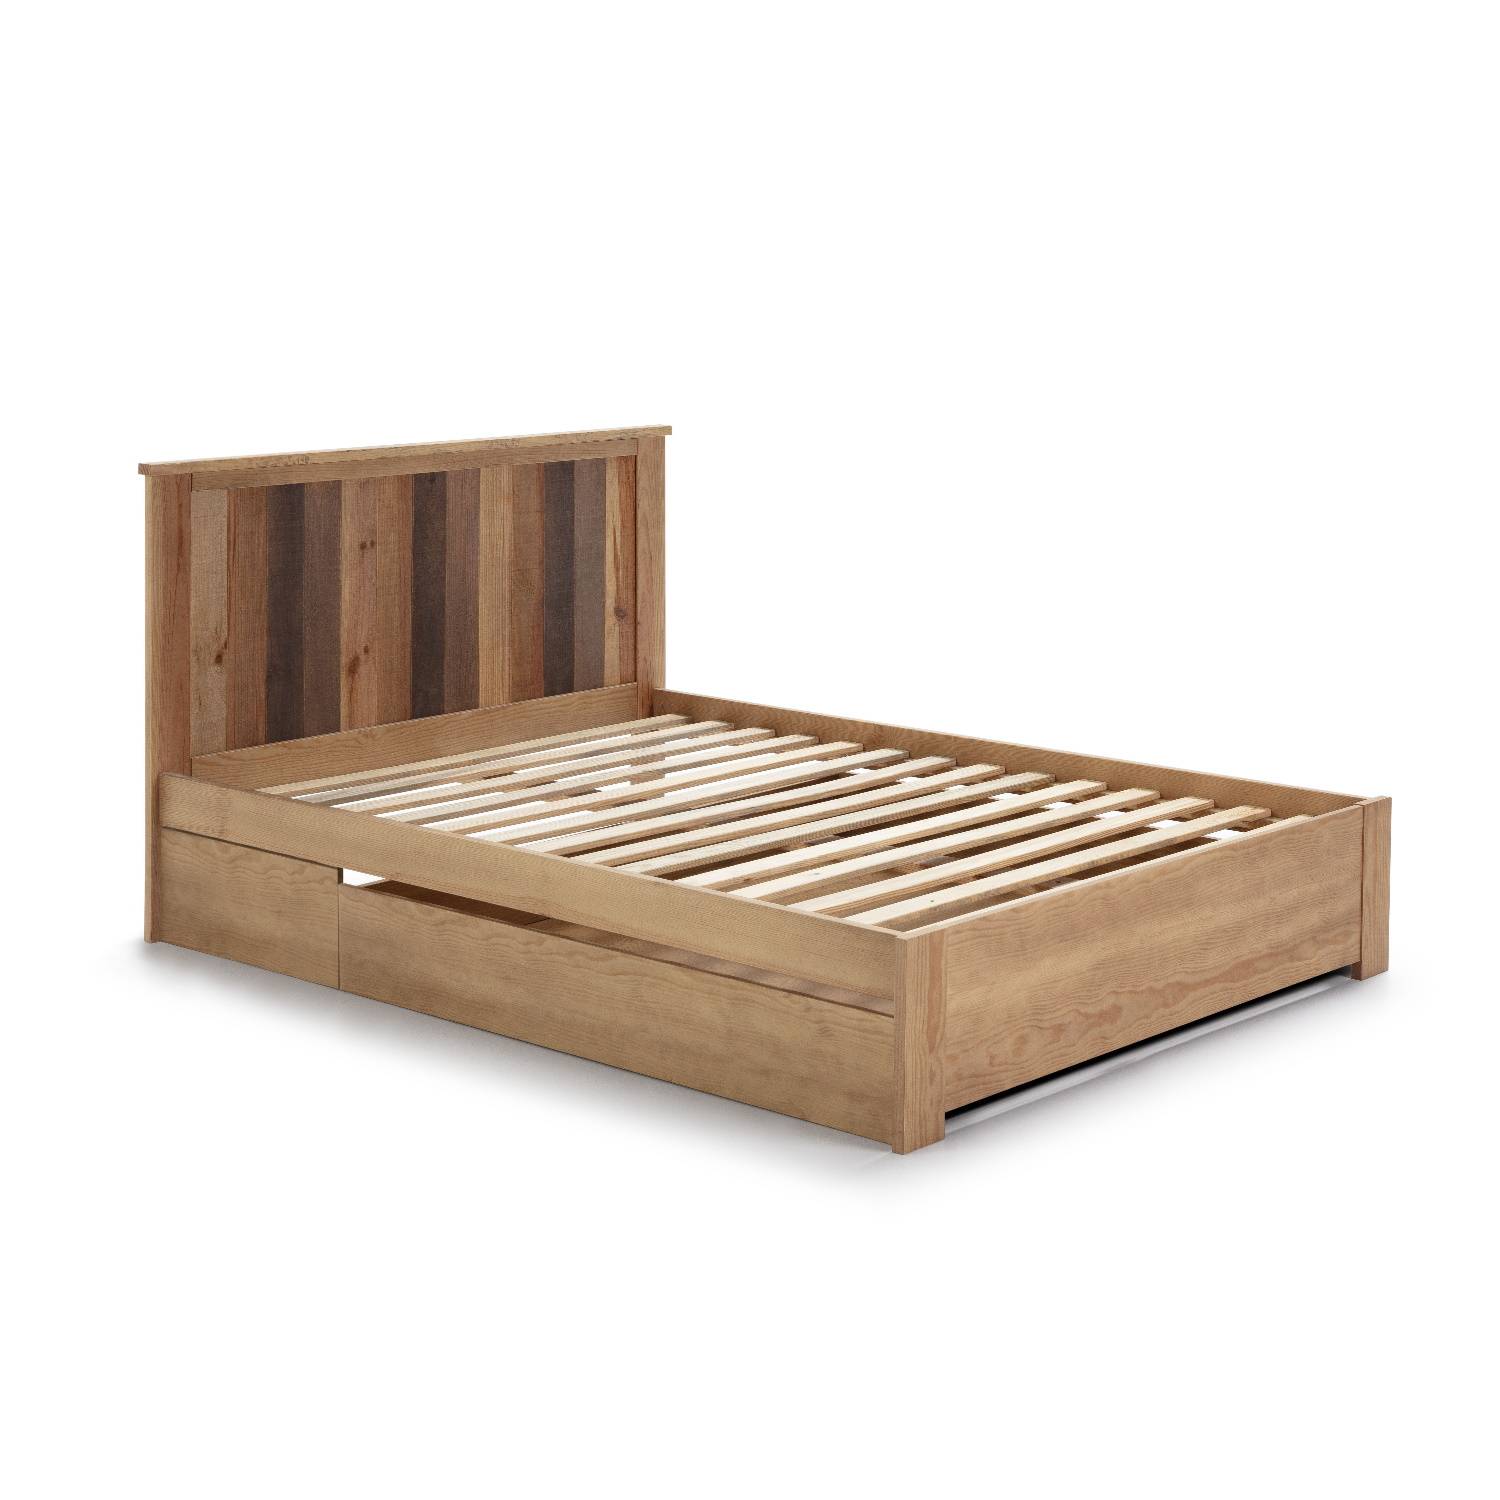 Estructura de cama de 160x200 cm fabricada en metal y madera